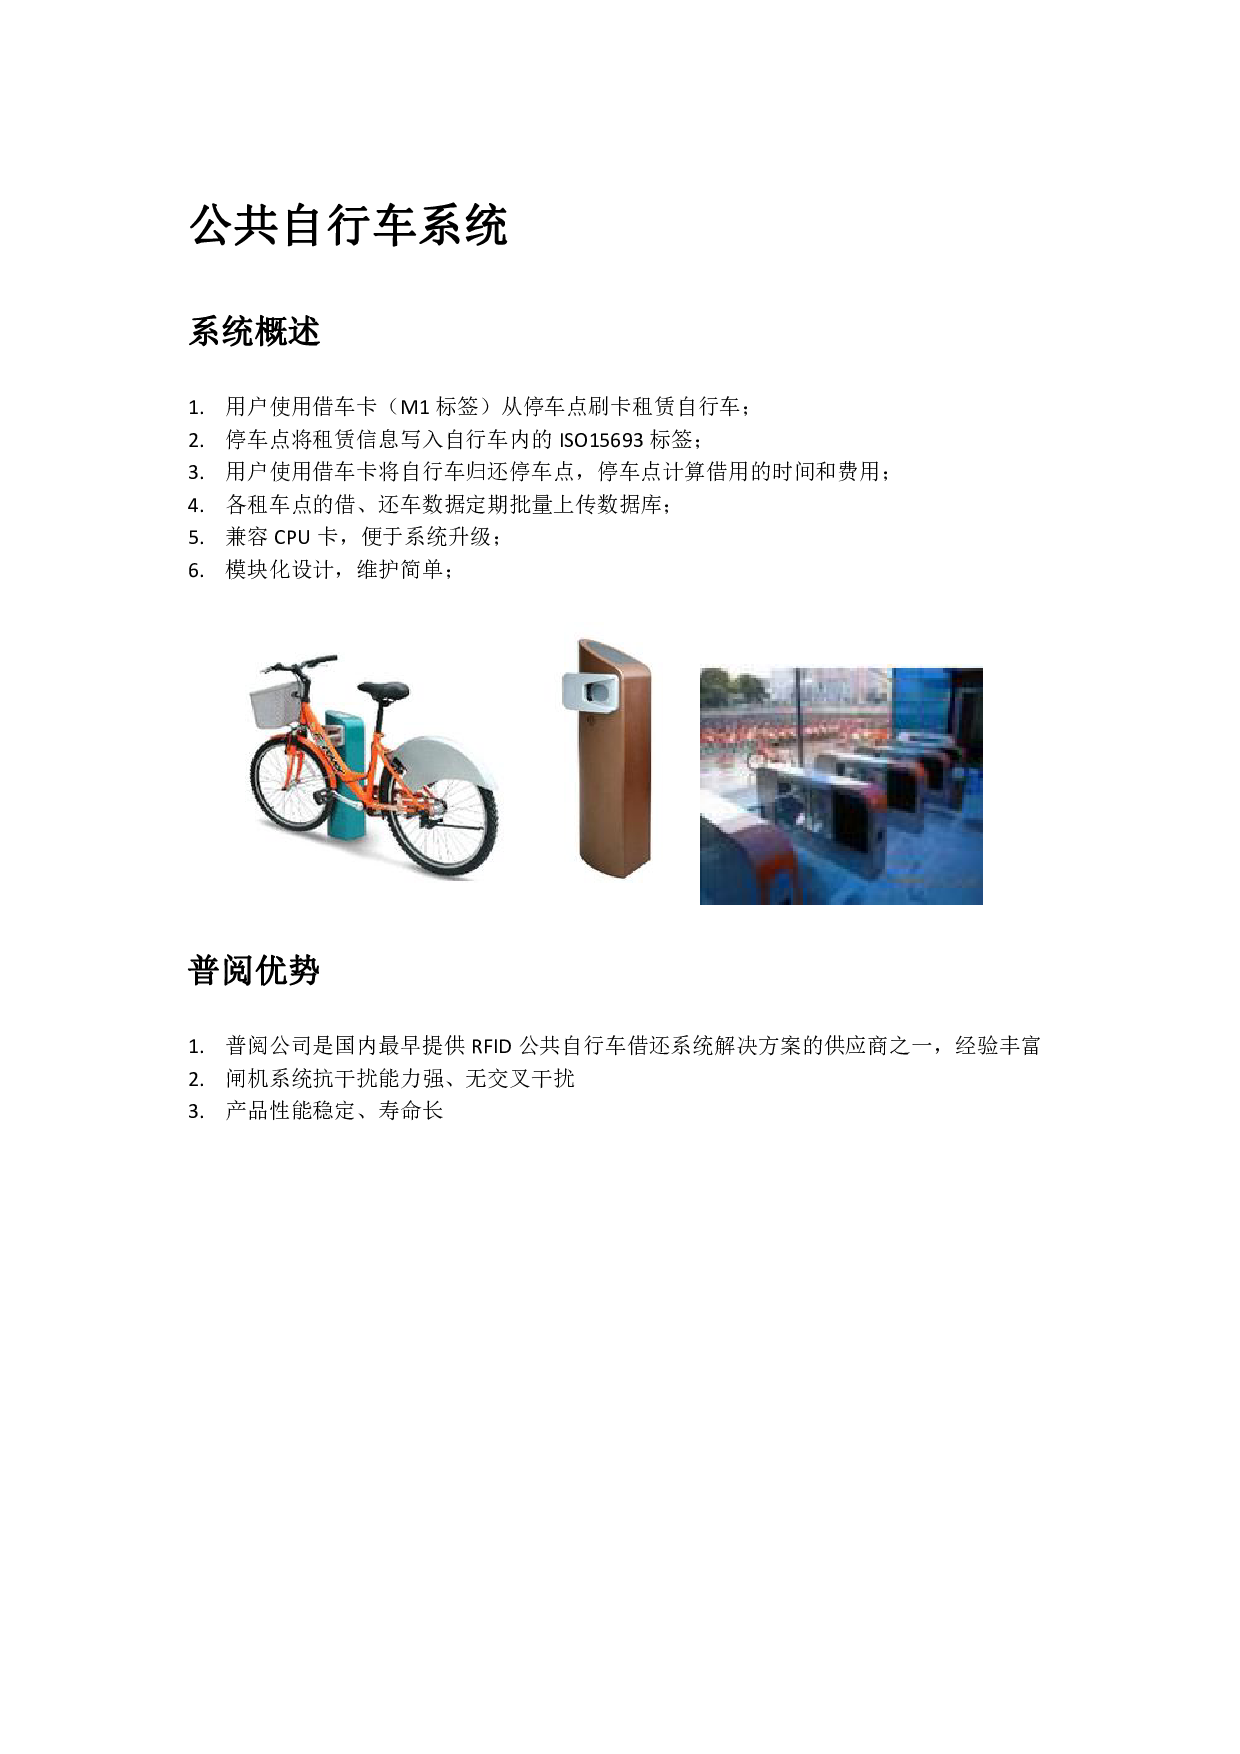 公共自行车系统图片